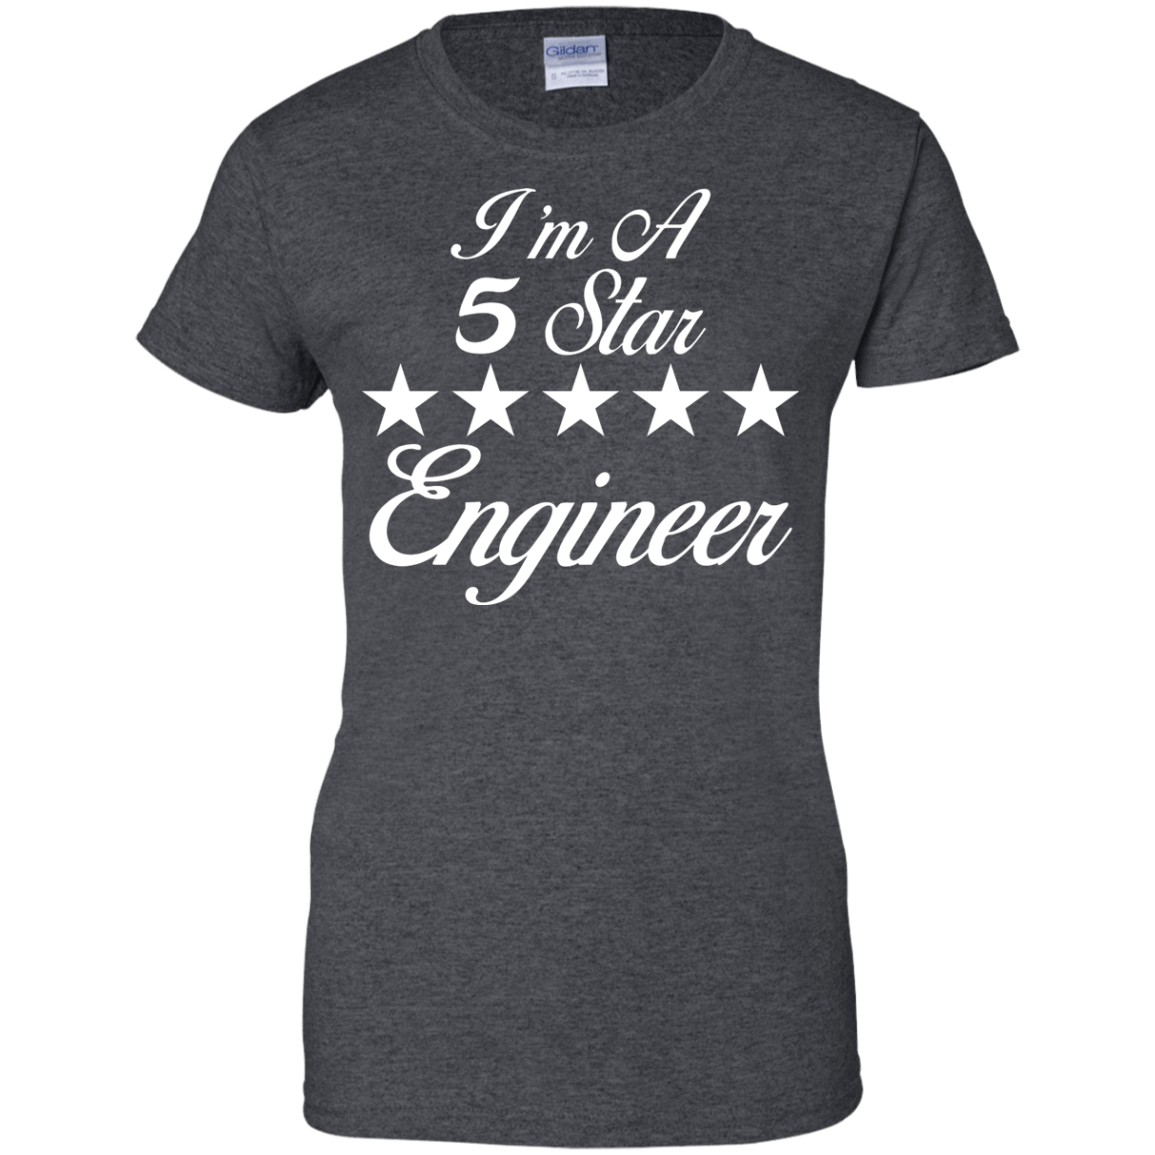 Soy un ingeniero de 5 estrellas